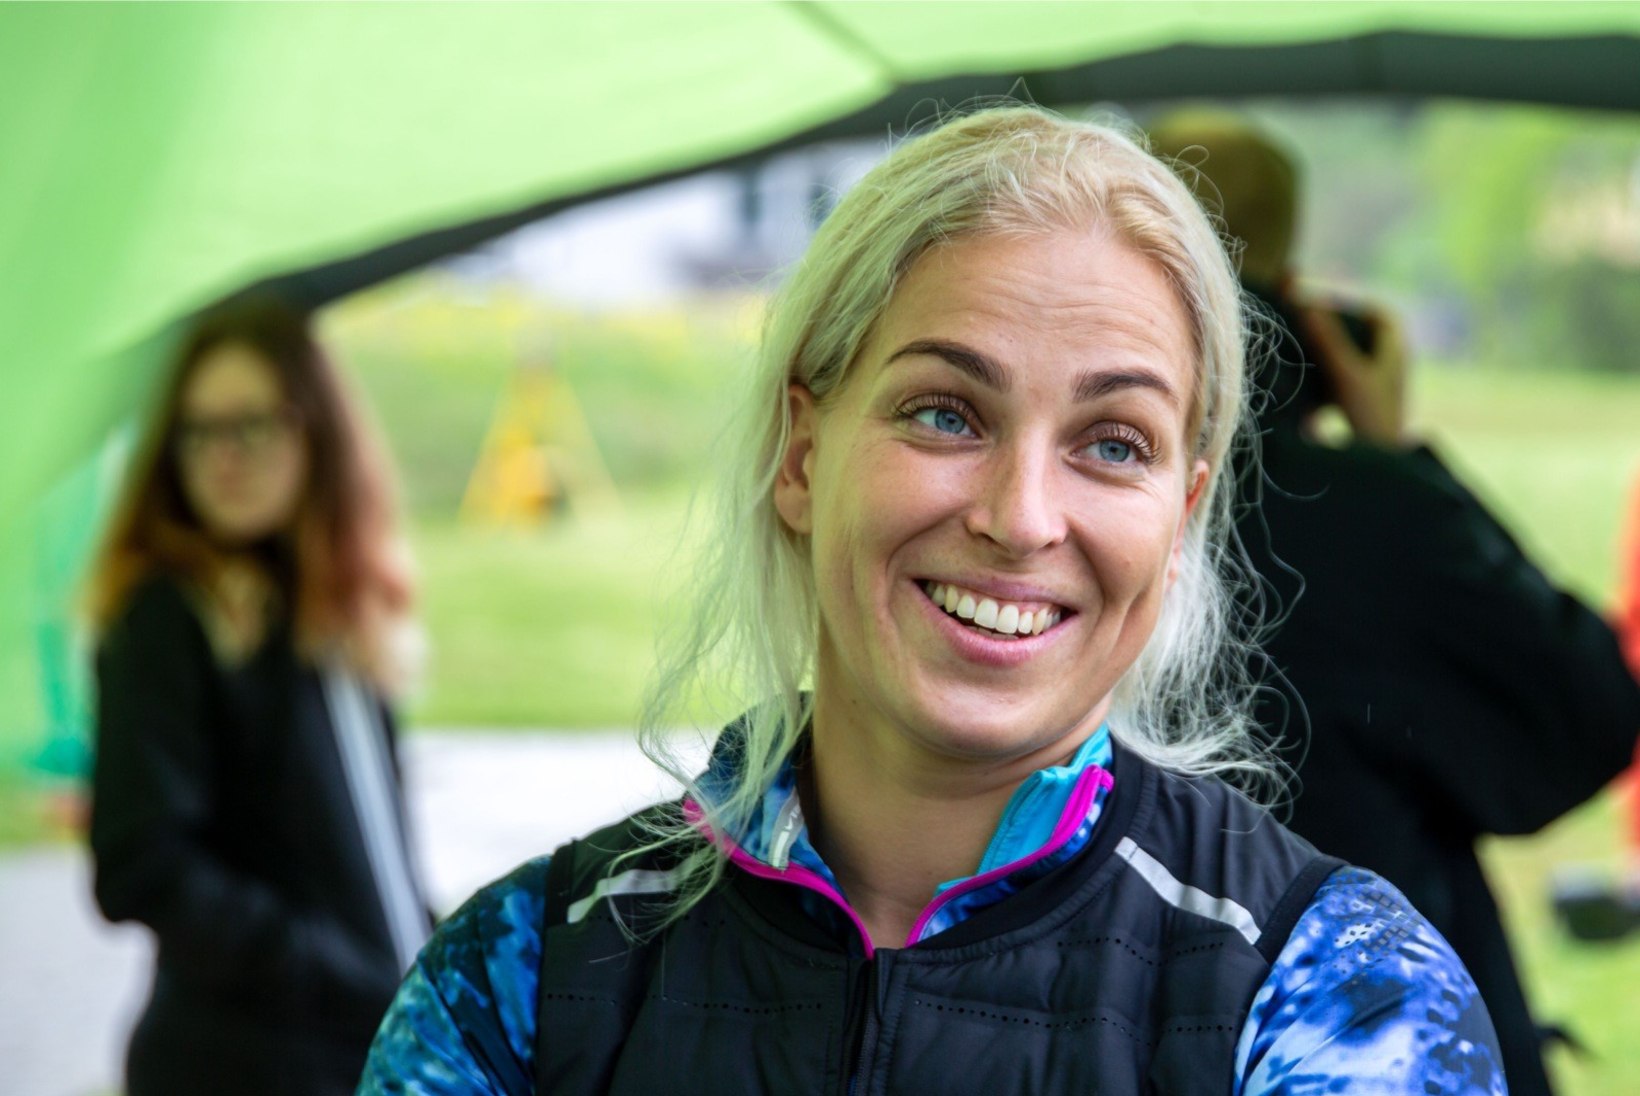 TUBLI: Kati Ojaloo alustas hooaega Soomes pikkade heidetega, eesmärk on 70 meetri joone alistamine